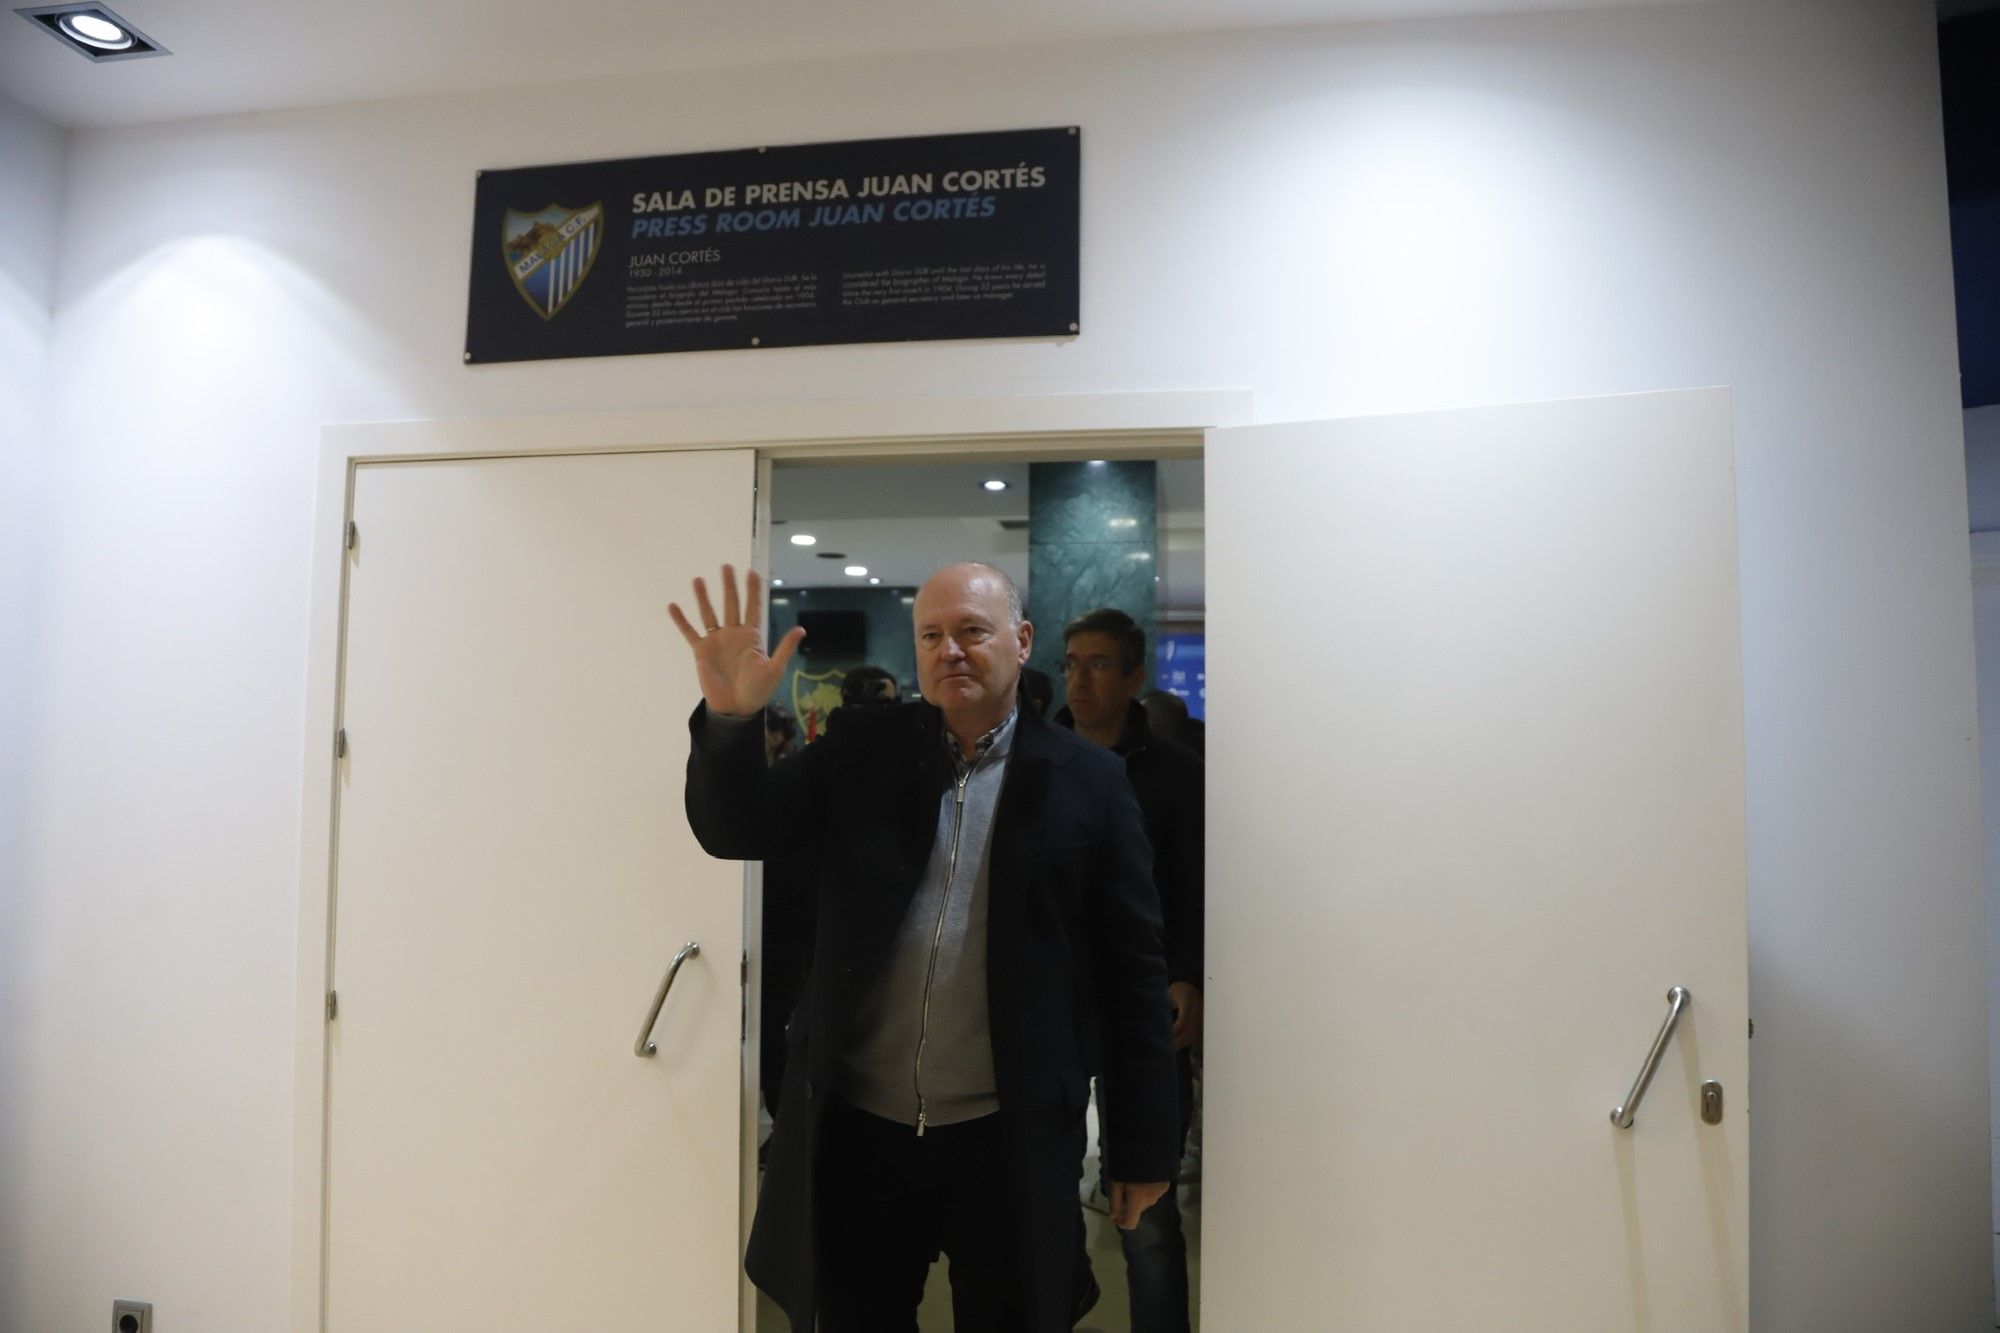 Rueda de prensa de despedida de Pepe Mel como entrenador del Málaga CF